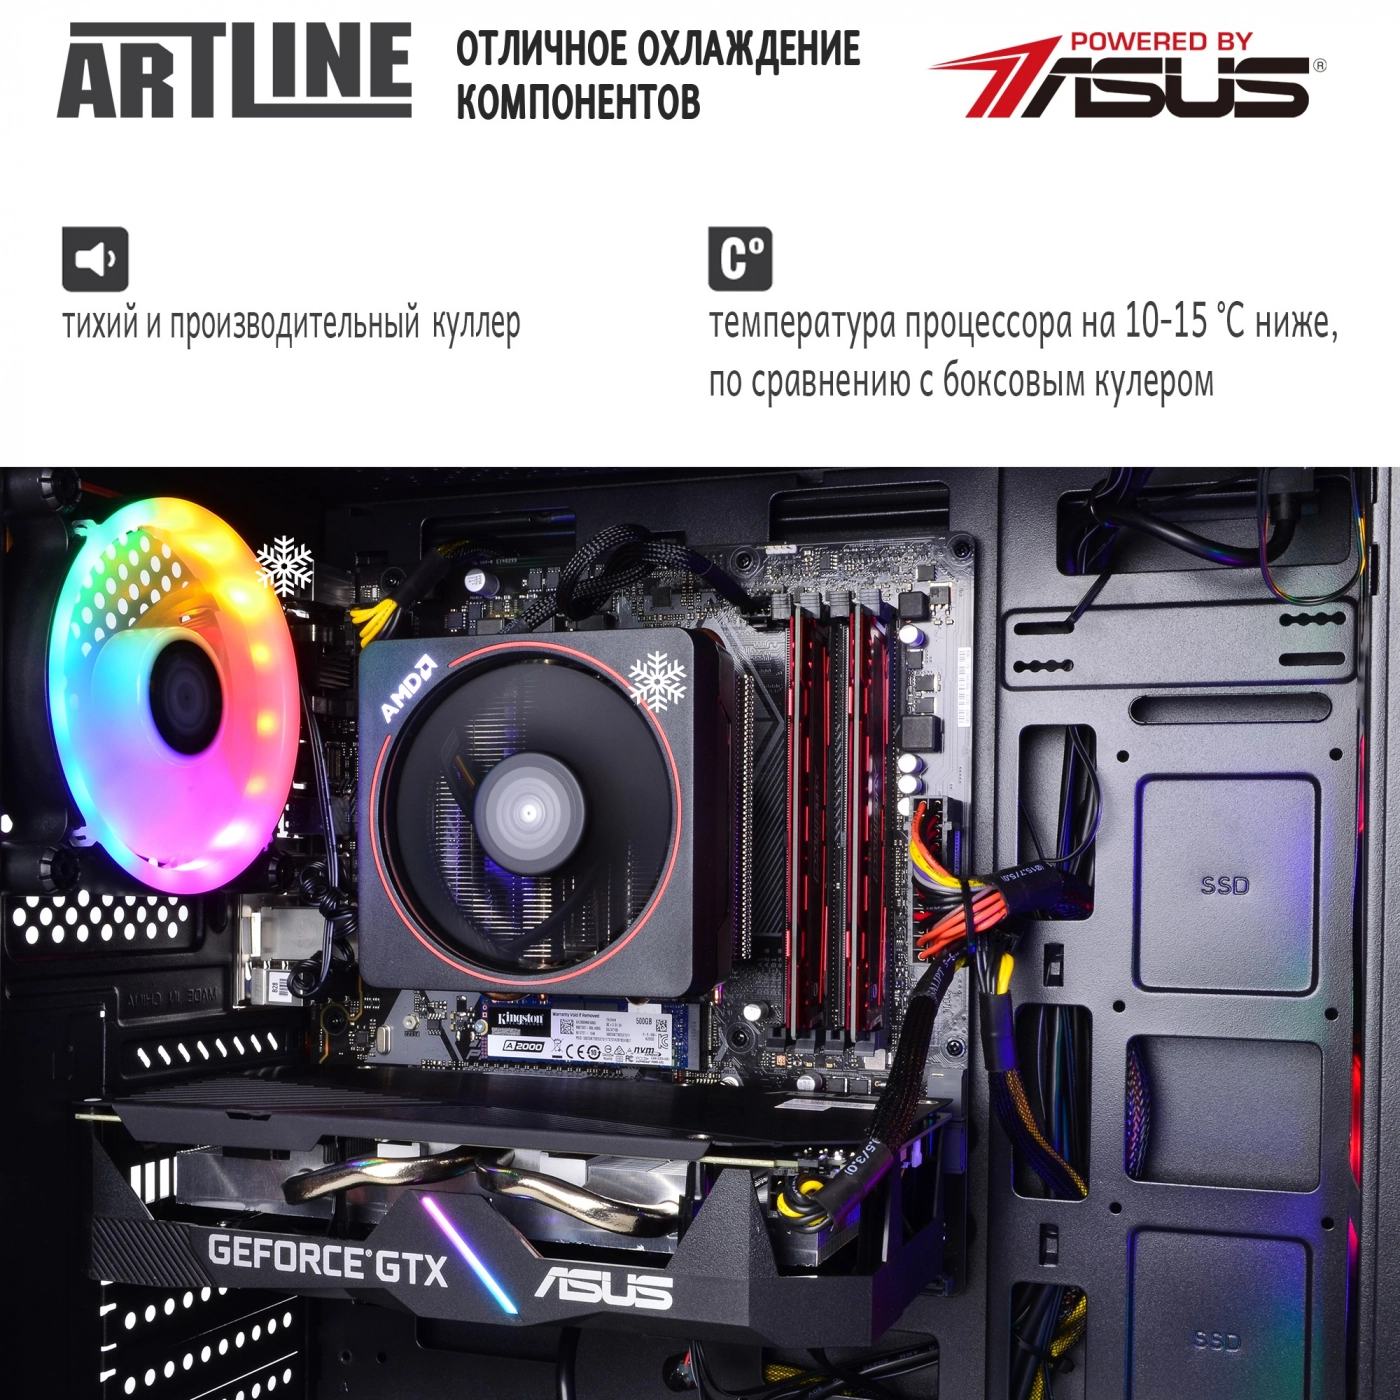 Купить Компьютер ARTLINE Gaming X69v03 - фото 7